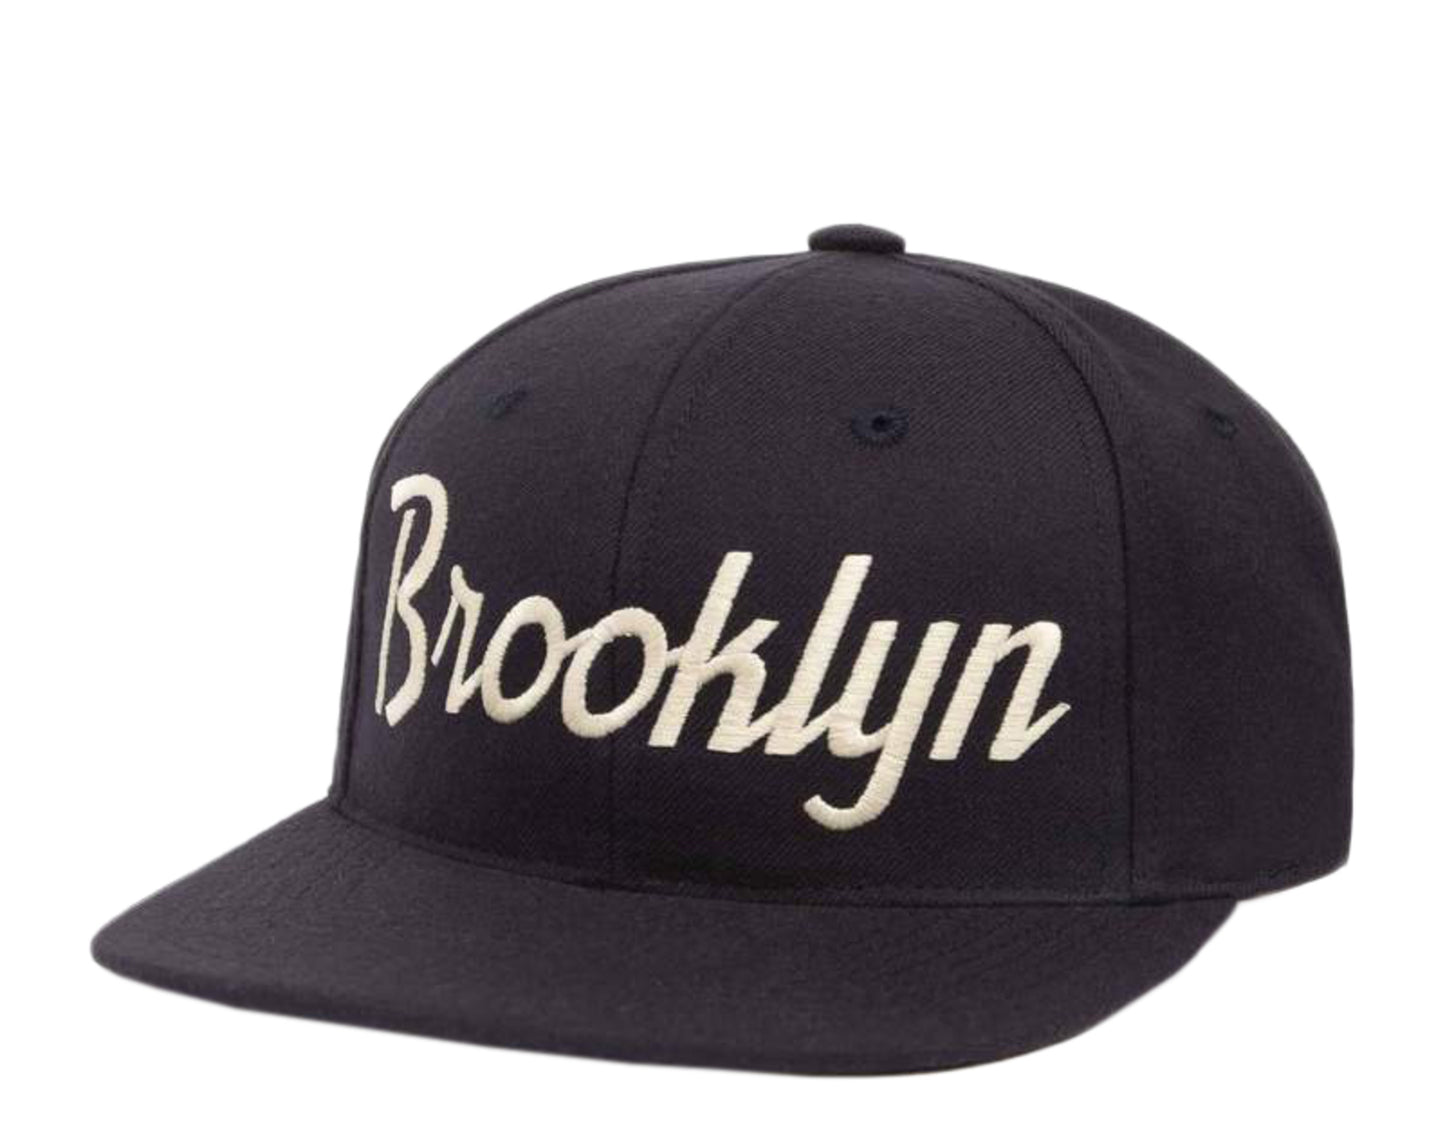 Hood Hat USA The Brooklyn Wool Snapback